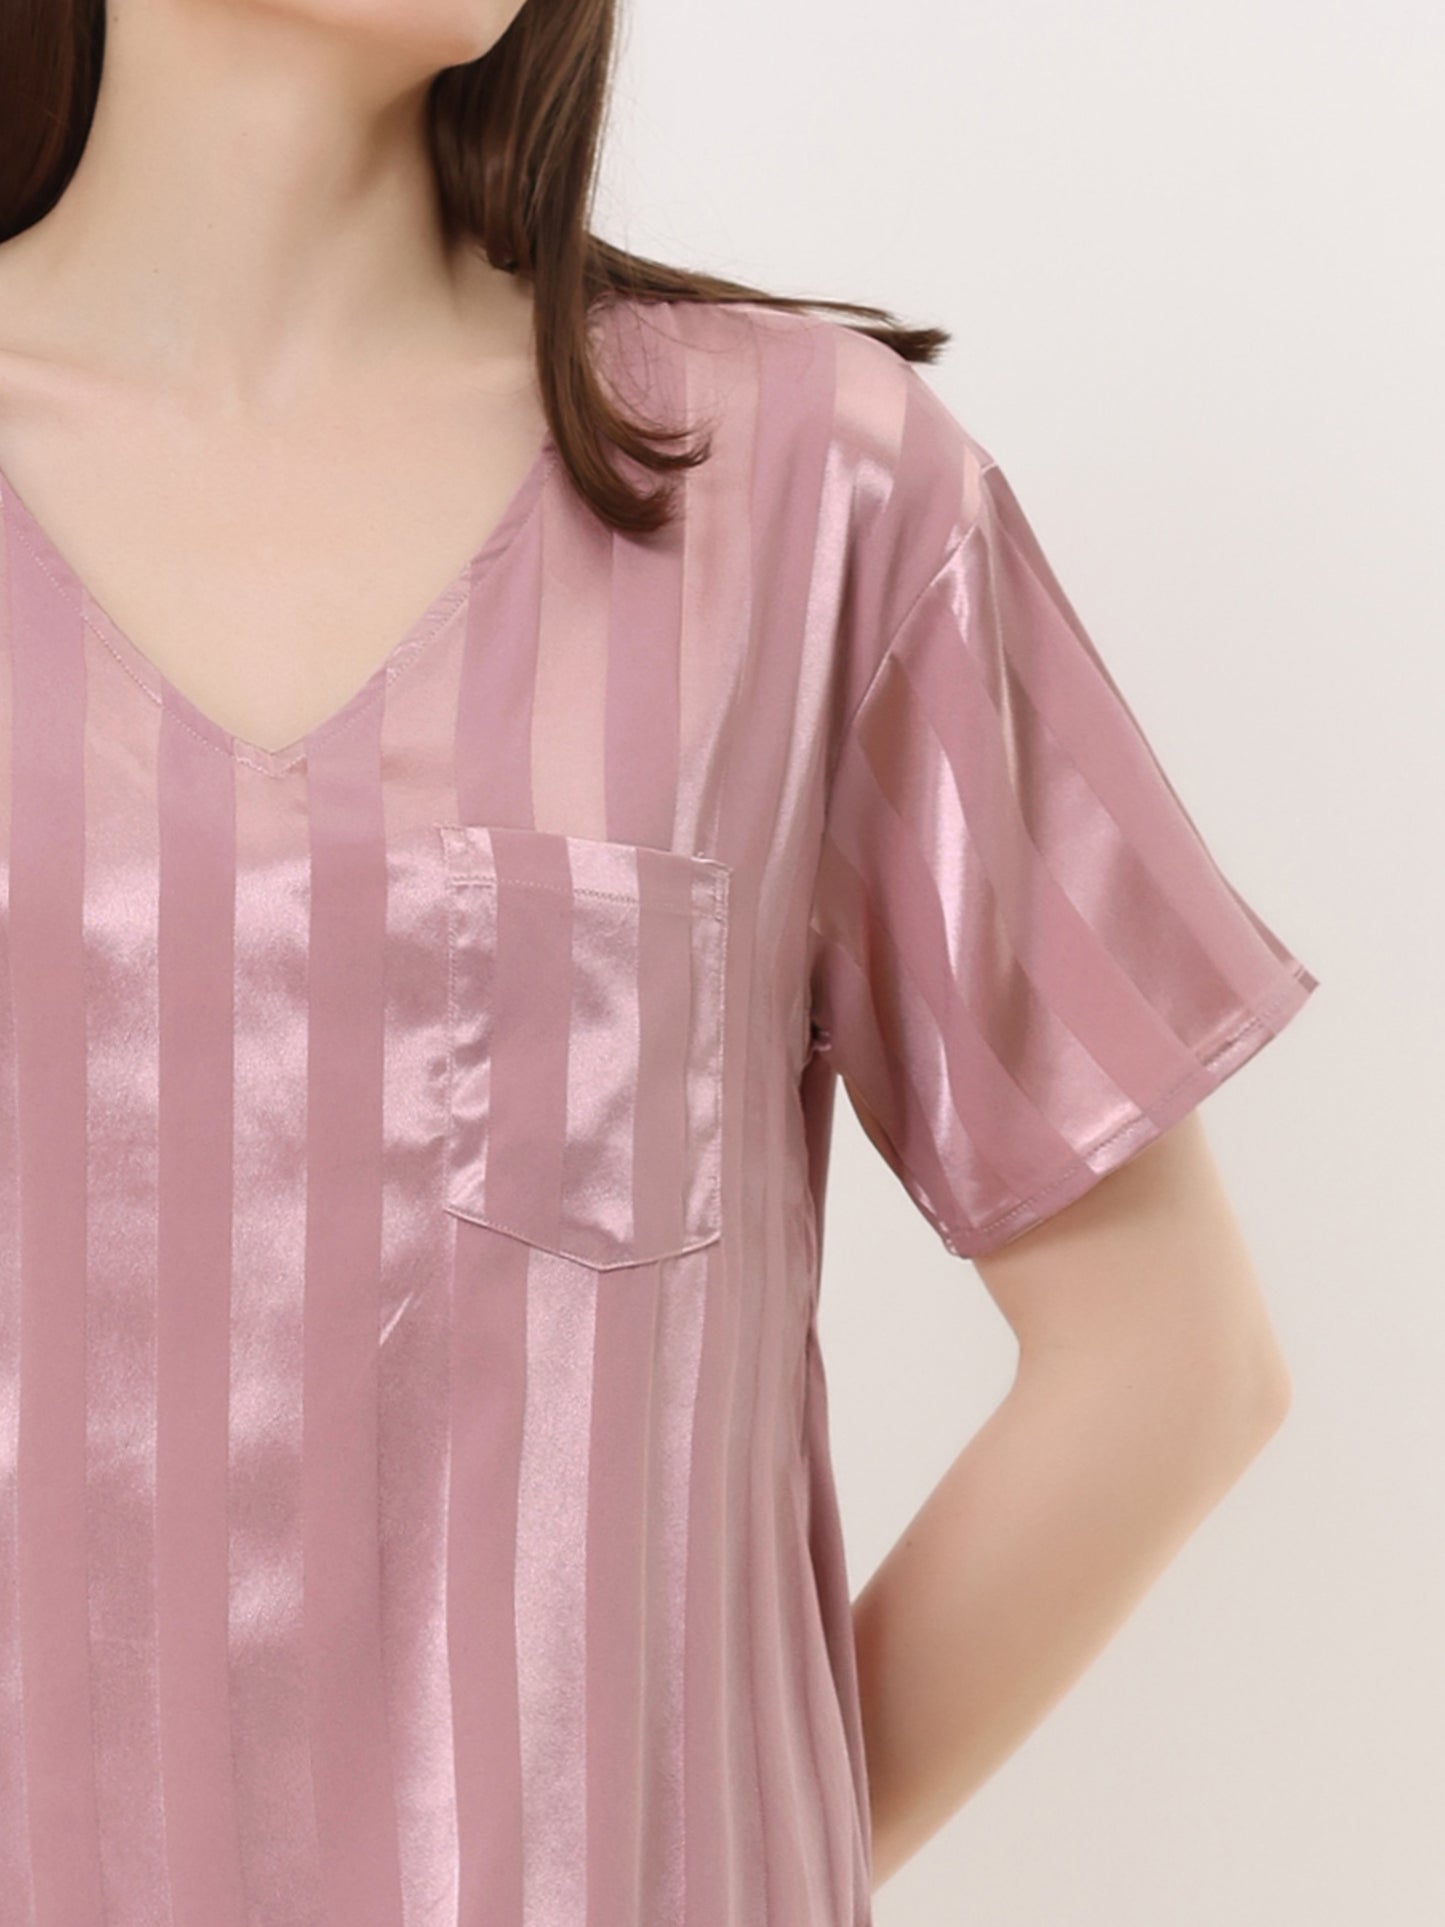 cheibear Pajamas Satin Dress Nightshirt Short Sleeves Lounge Sleepwear Nightgown Pink